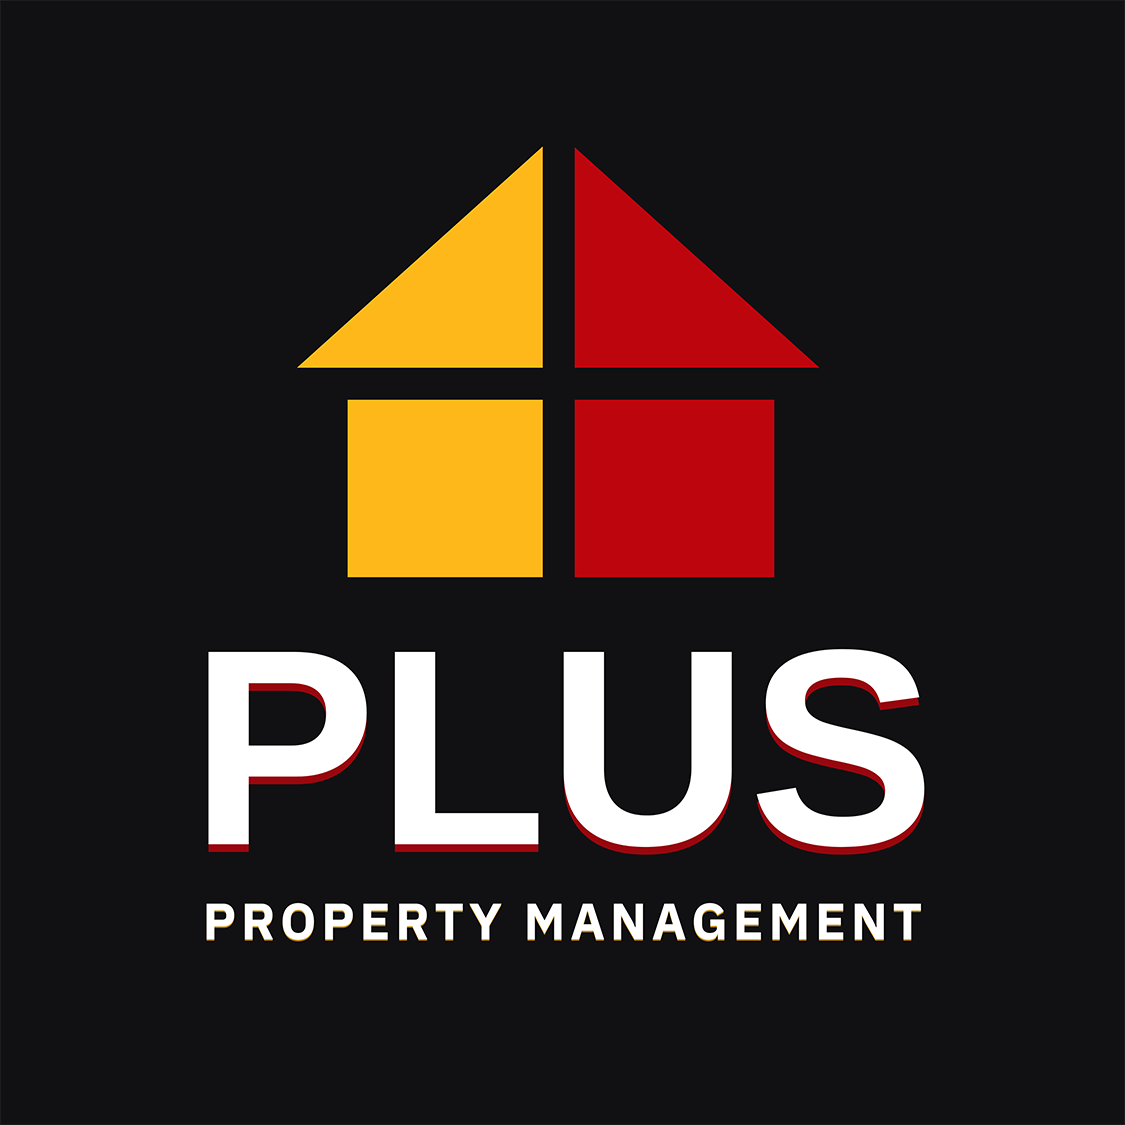 PLUS Property Management